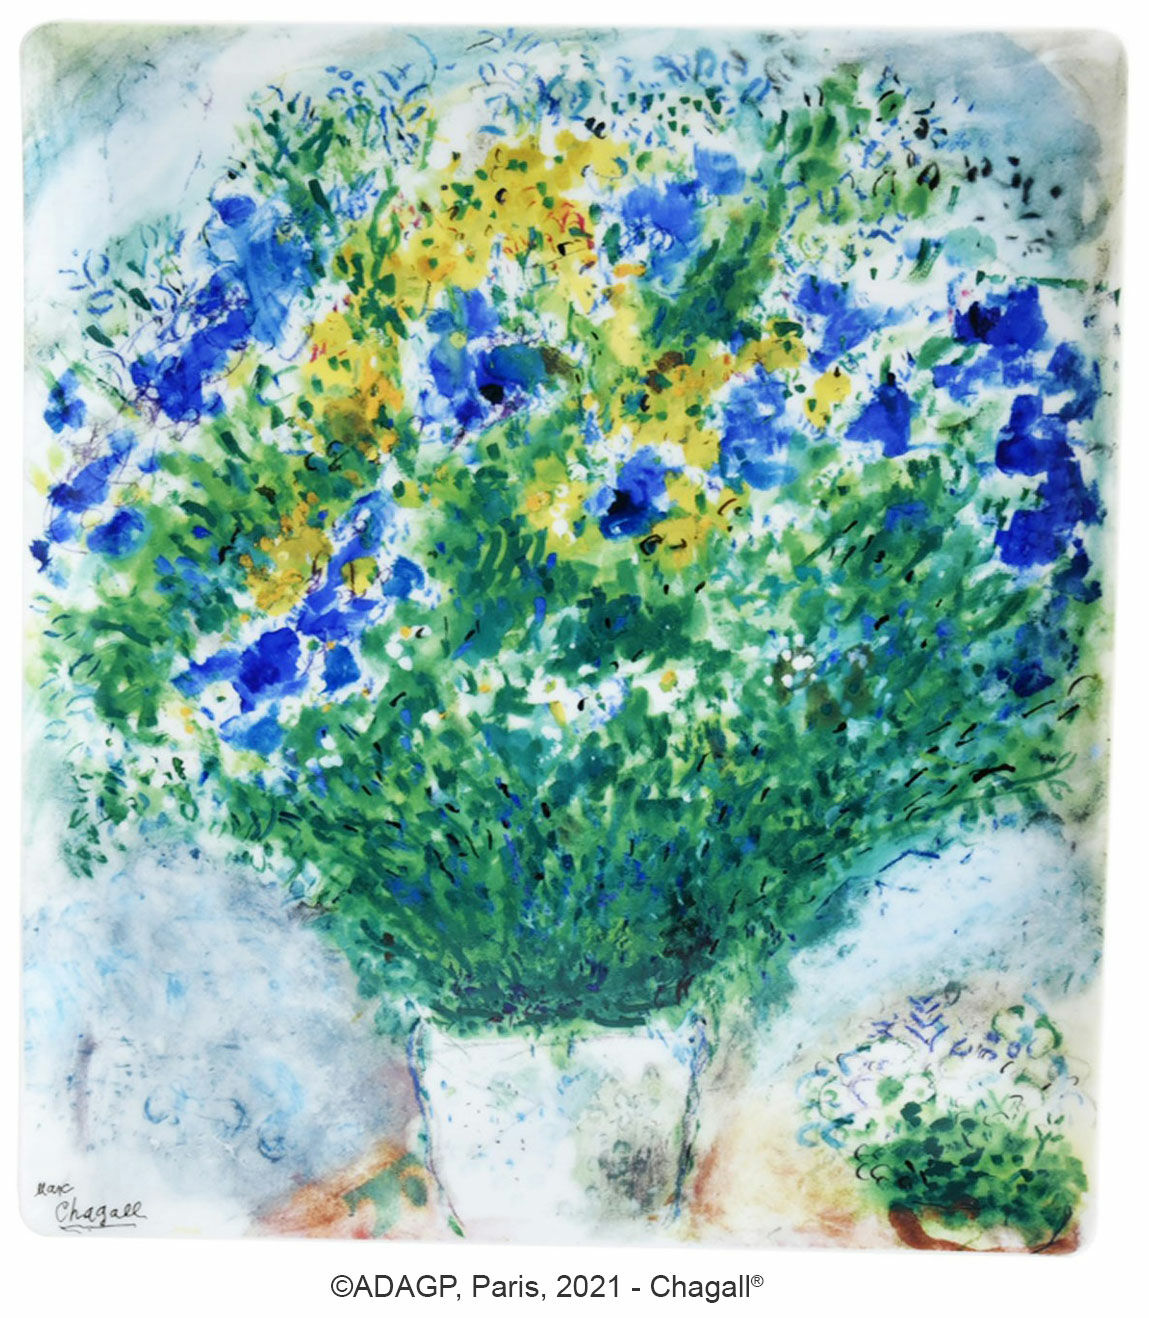 Collection "Les Bouquets de fleurs" by Bernardaud - bowl / platter, porcelain by Marc Chagall